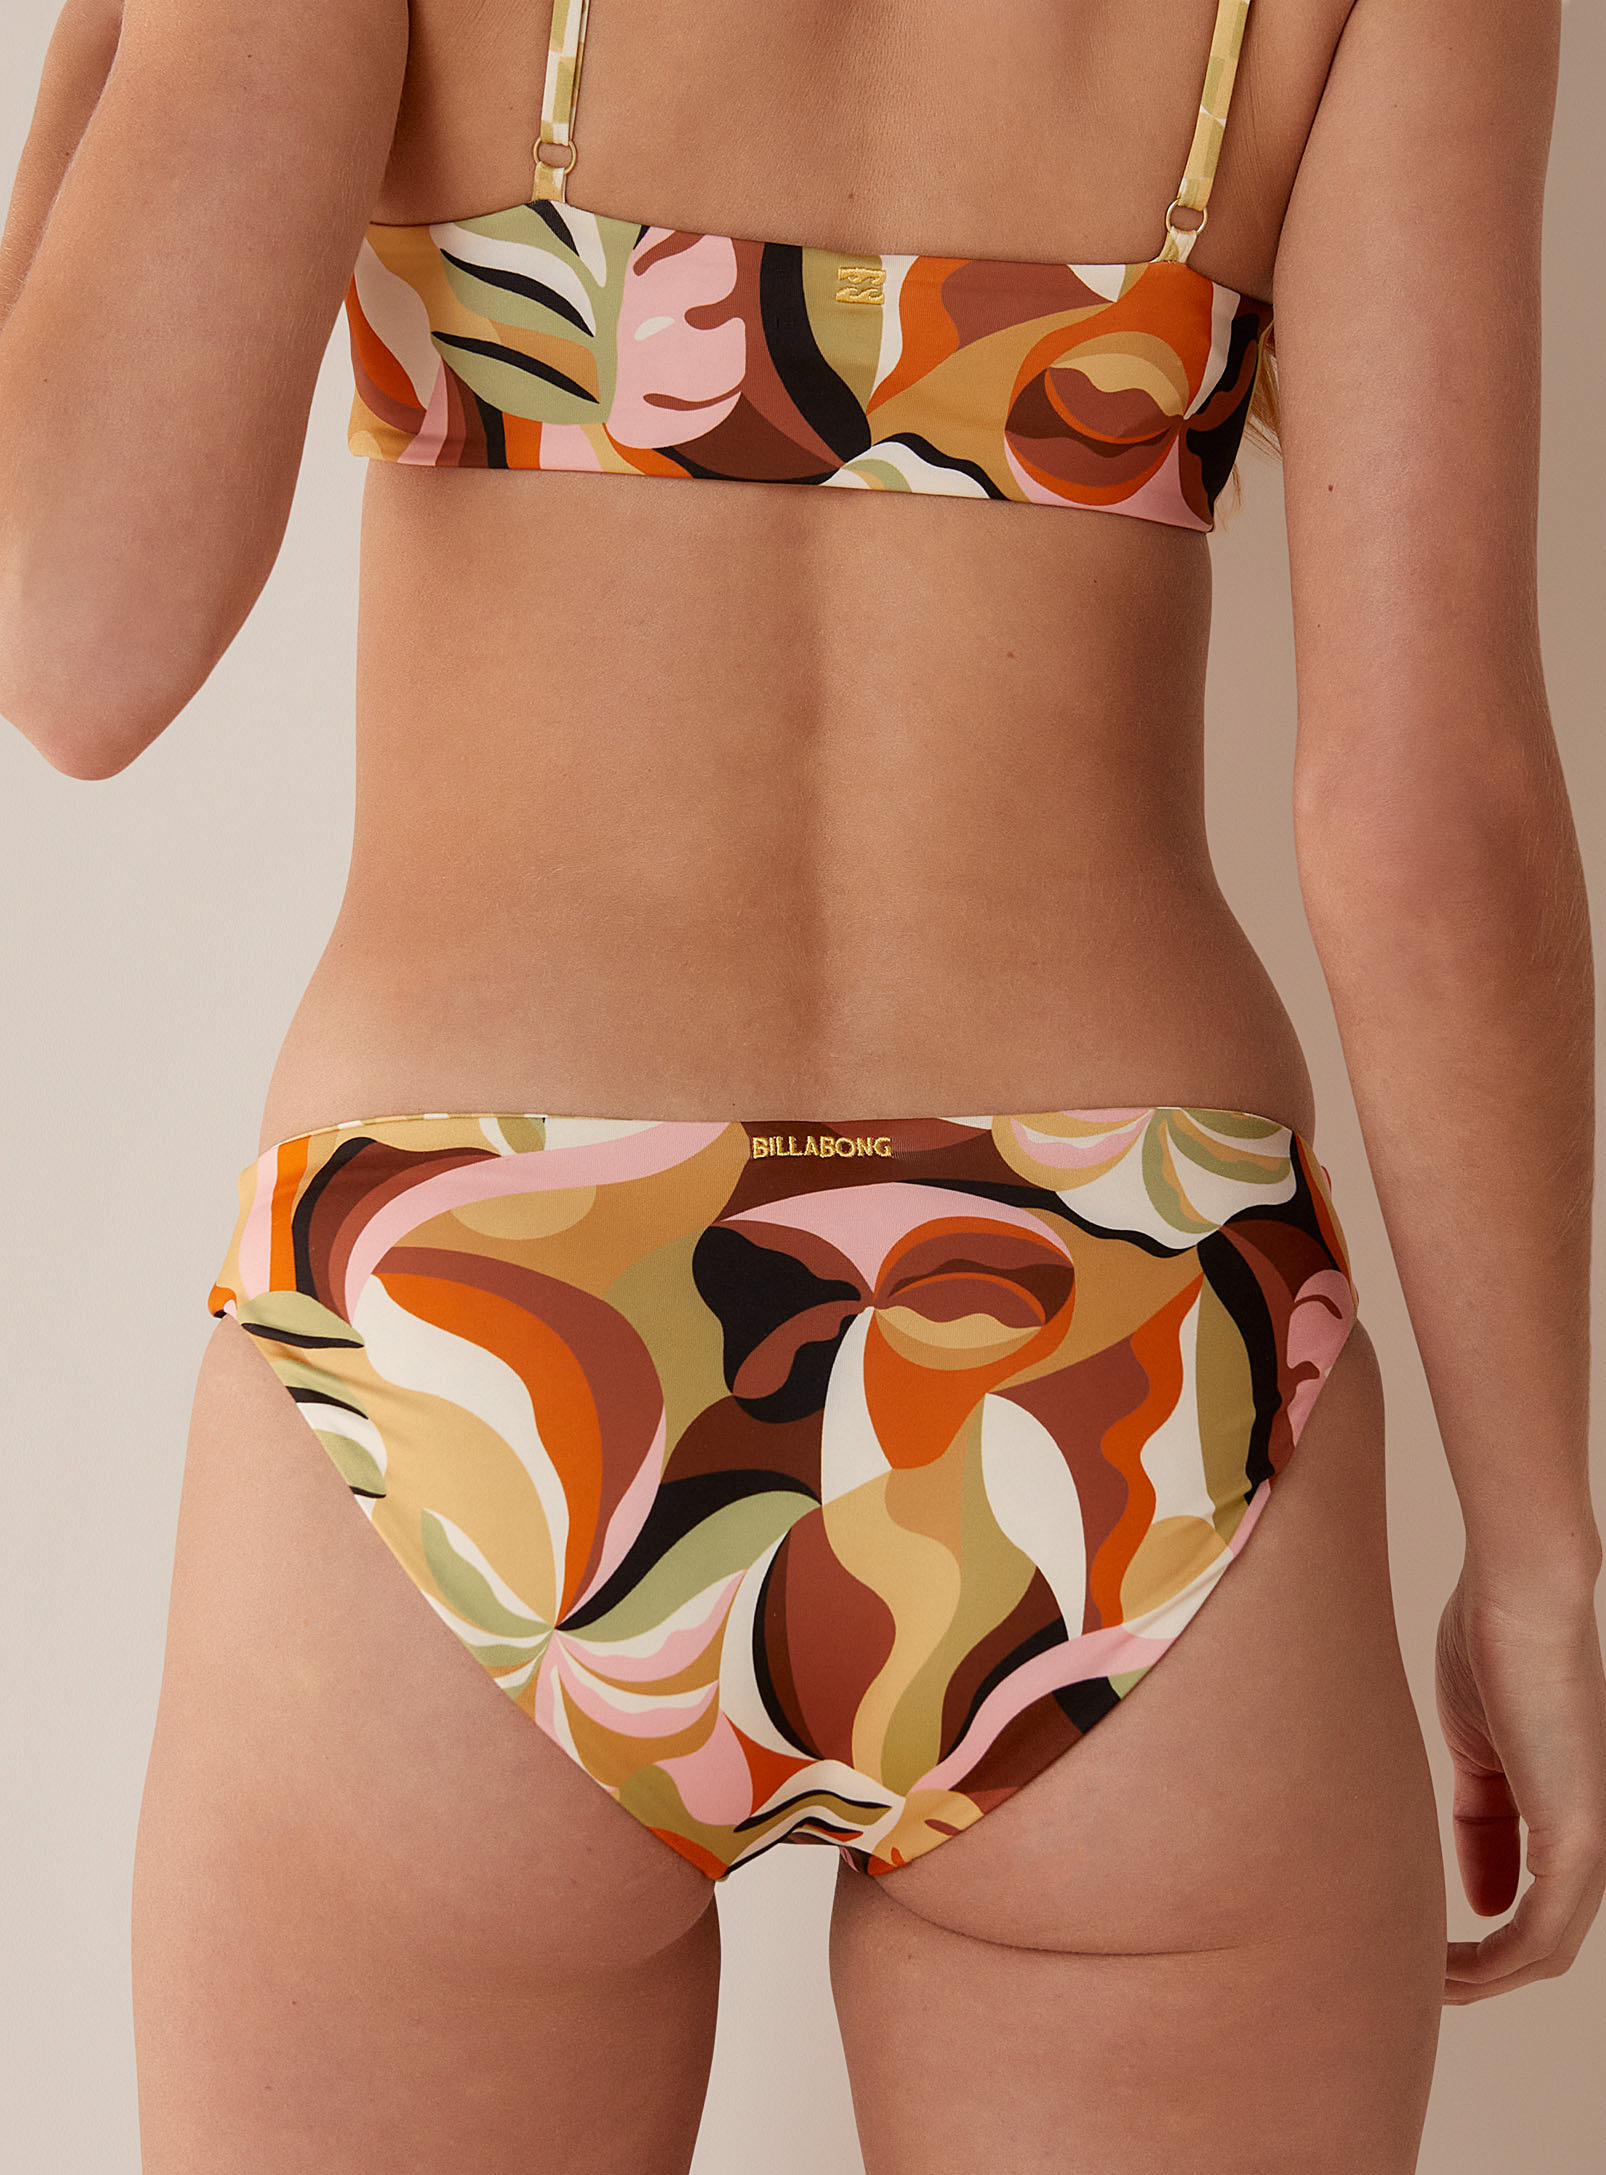 Billabong - Le petit bikini motifs paradisiaques Modèle réversible